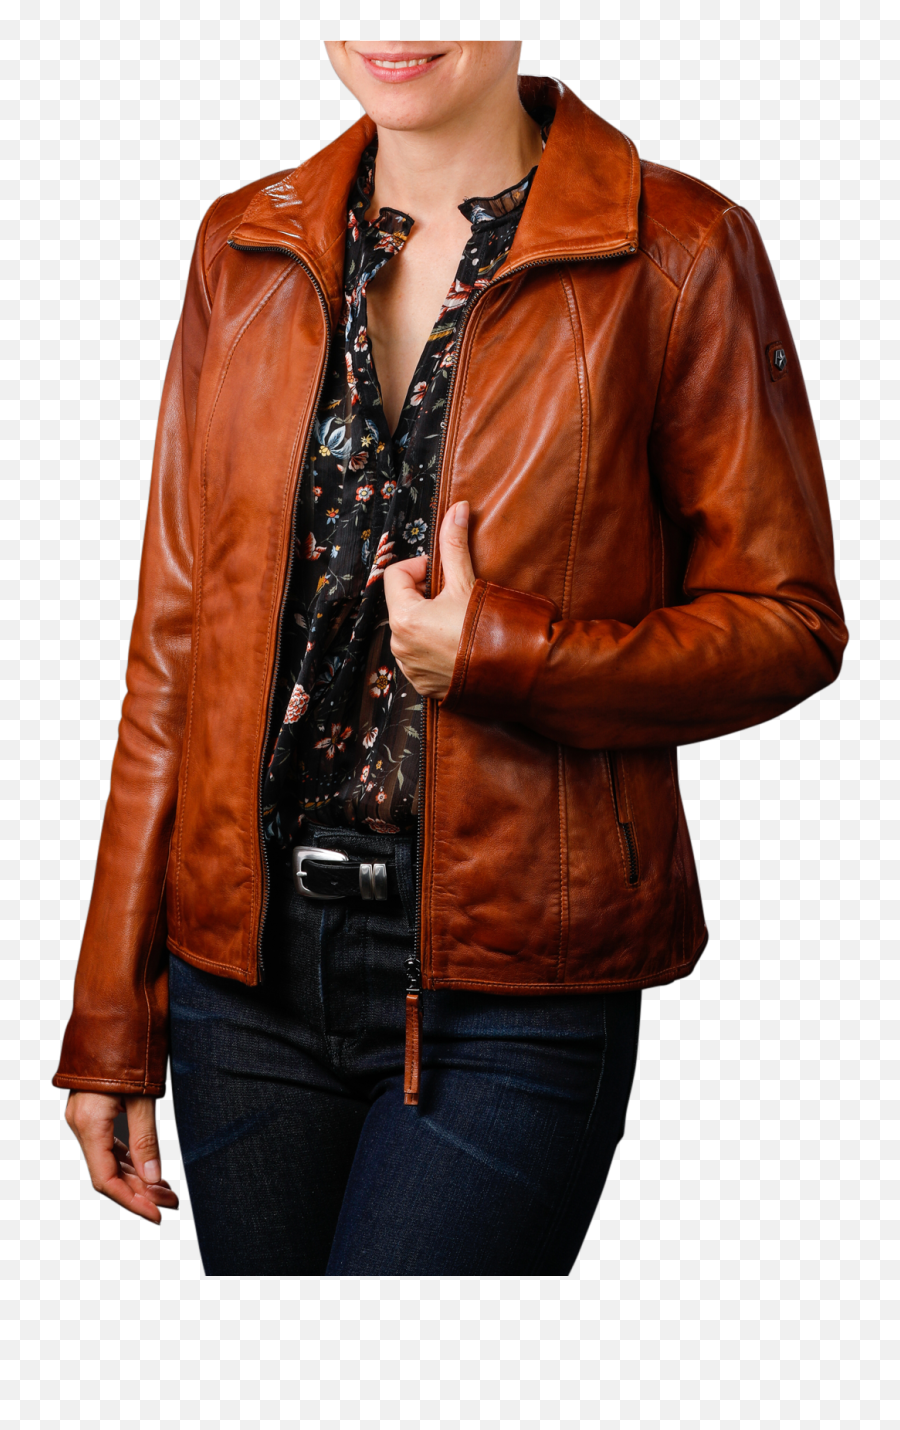 Milestone Phoebe Jacket Camel - Milestone Leather Woman Jacket Png,Womens Icon Textile Jacket